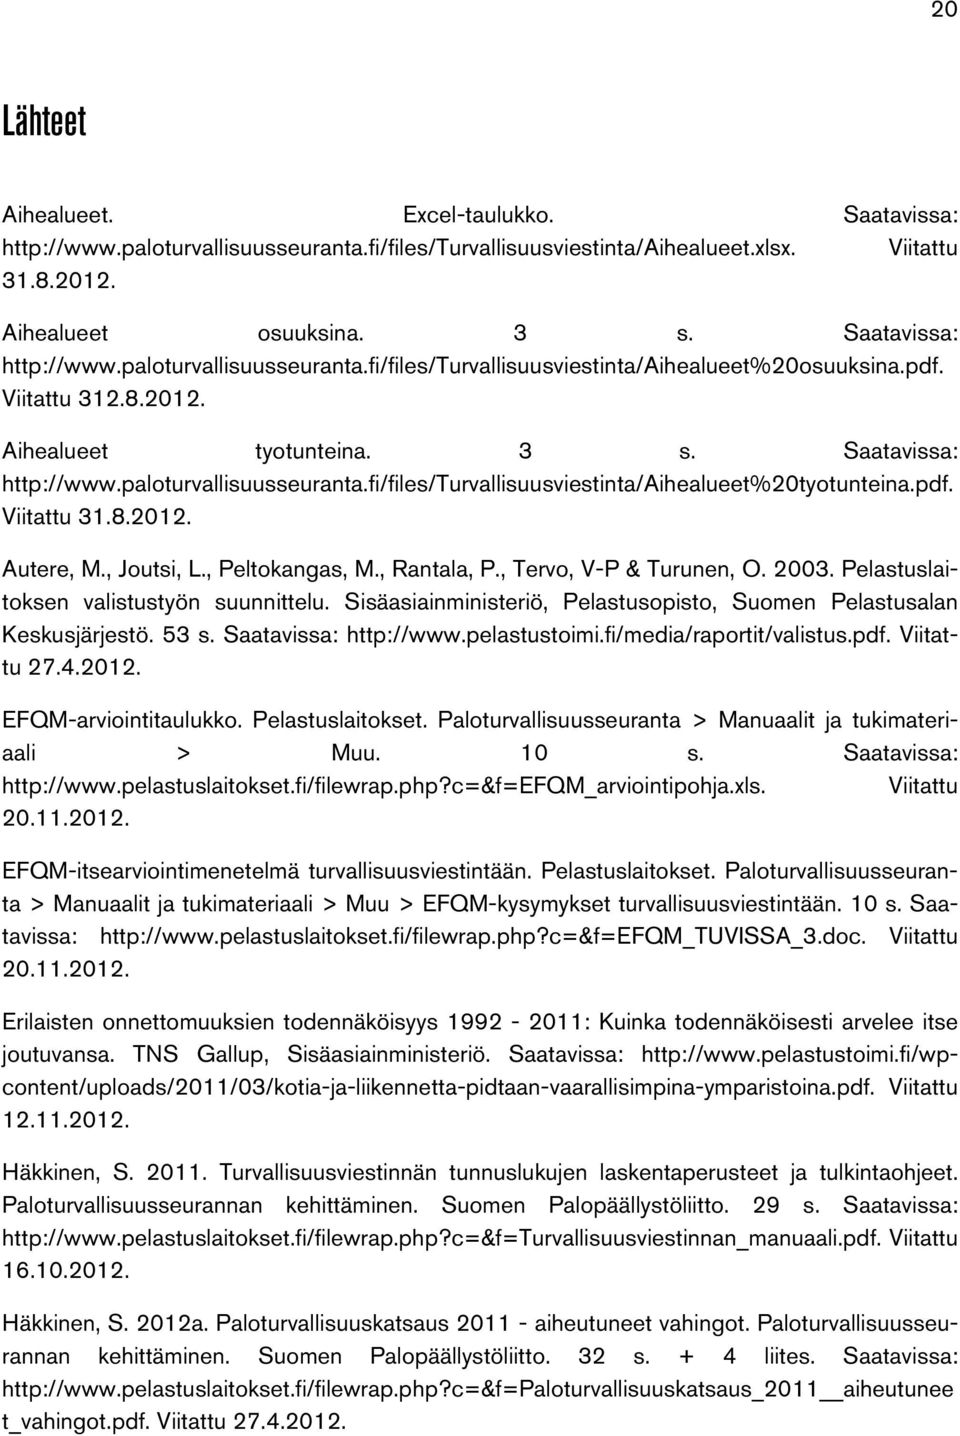 paloturvallisuusseuranta.fi/files/turvallisuusviestinta/aihealueet%20tyotunteina.pdf. Viitattu 31.8.2012. Autere, M., Joutsi, L., Peltokangas, M., Rantala, P., Tervo, V-P & Turunen, O. 2003.